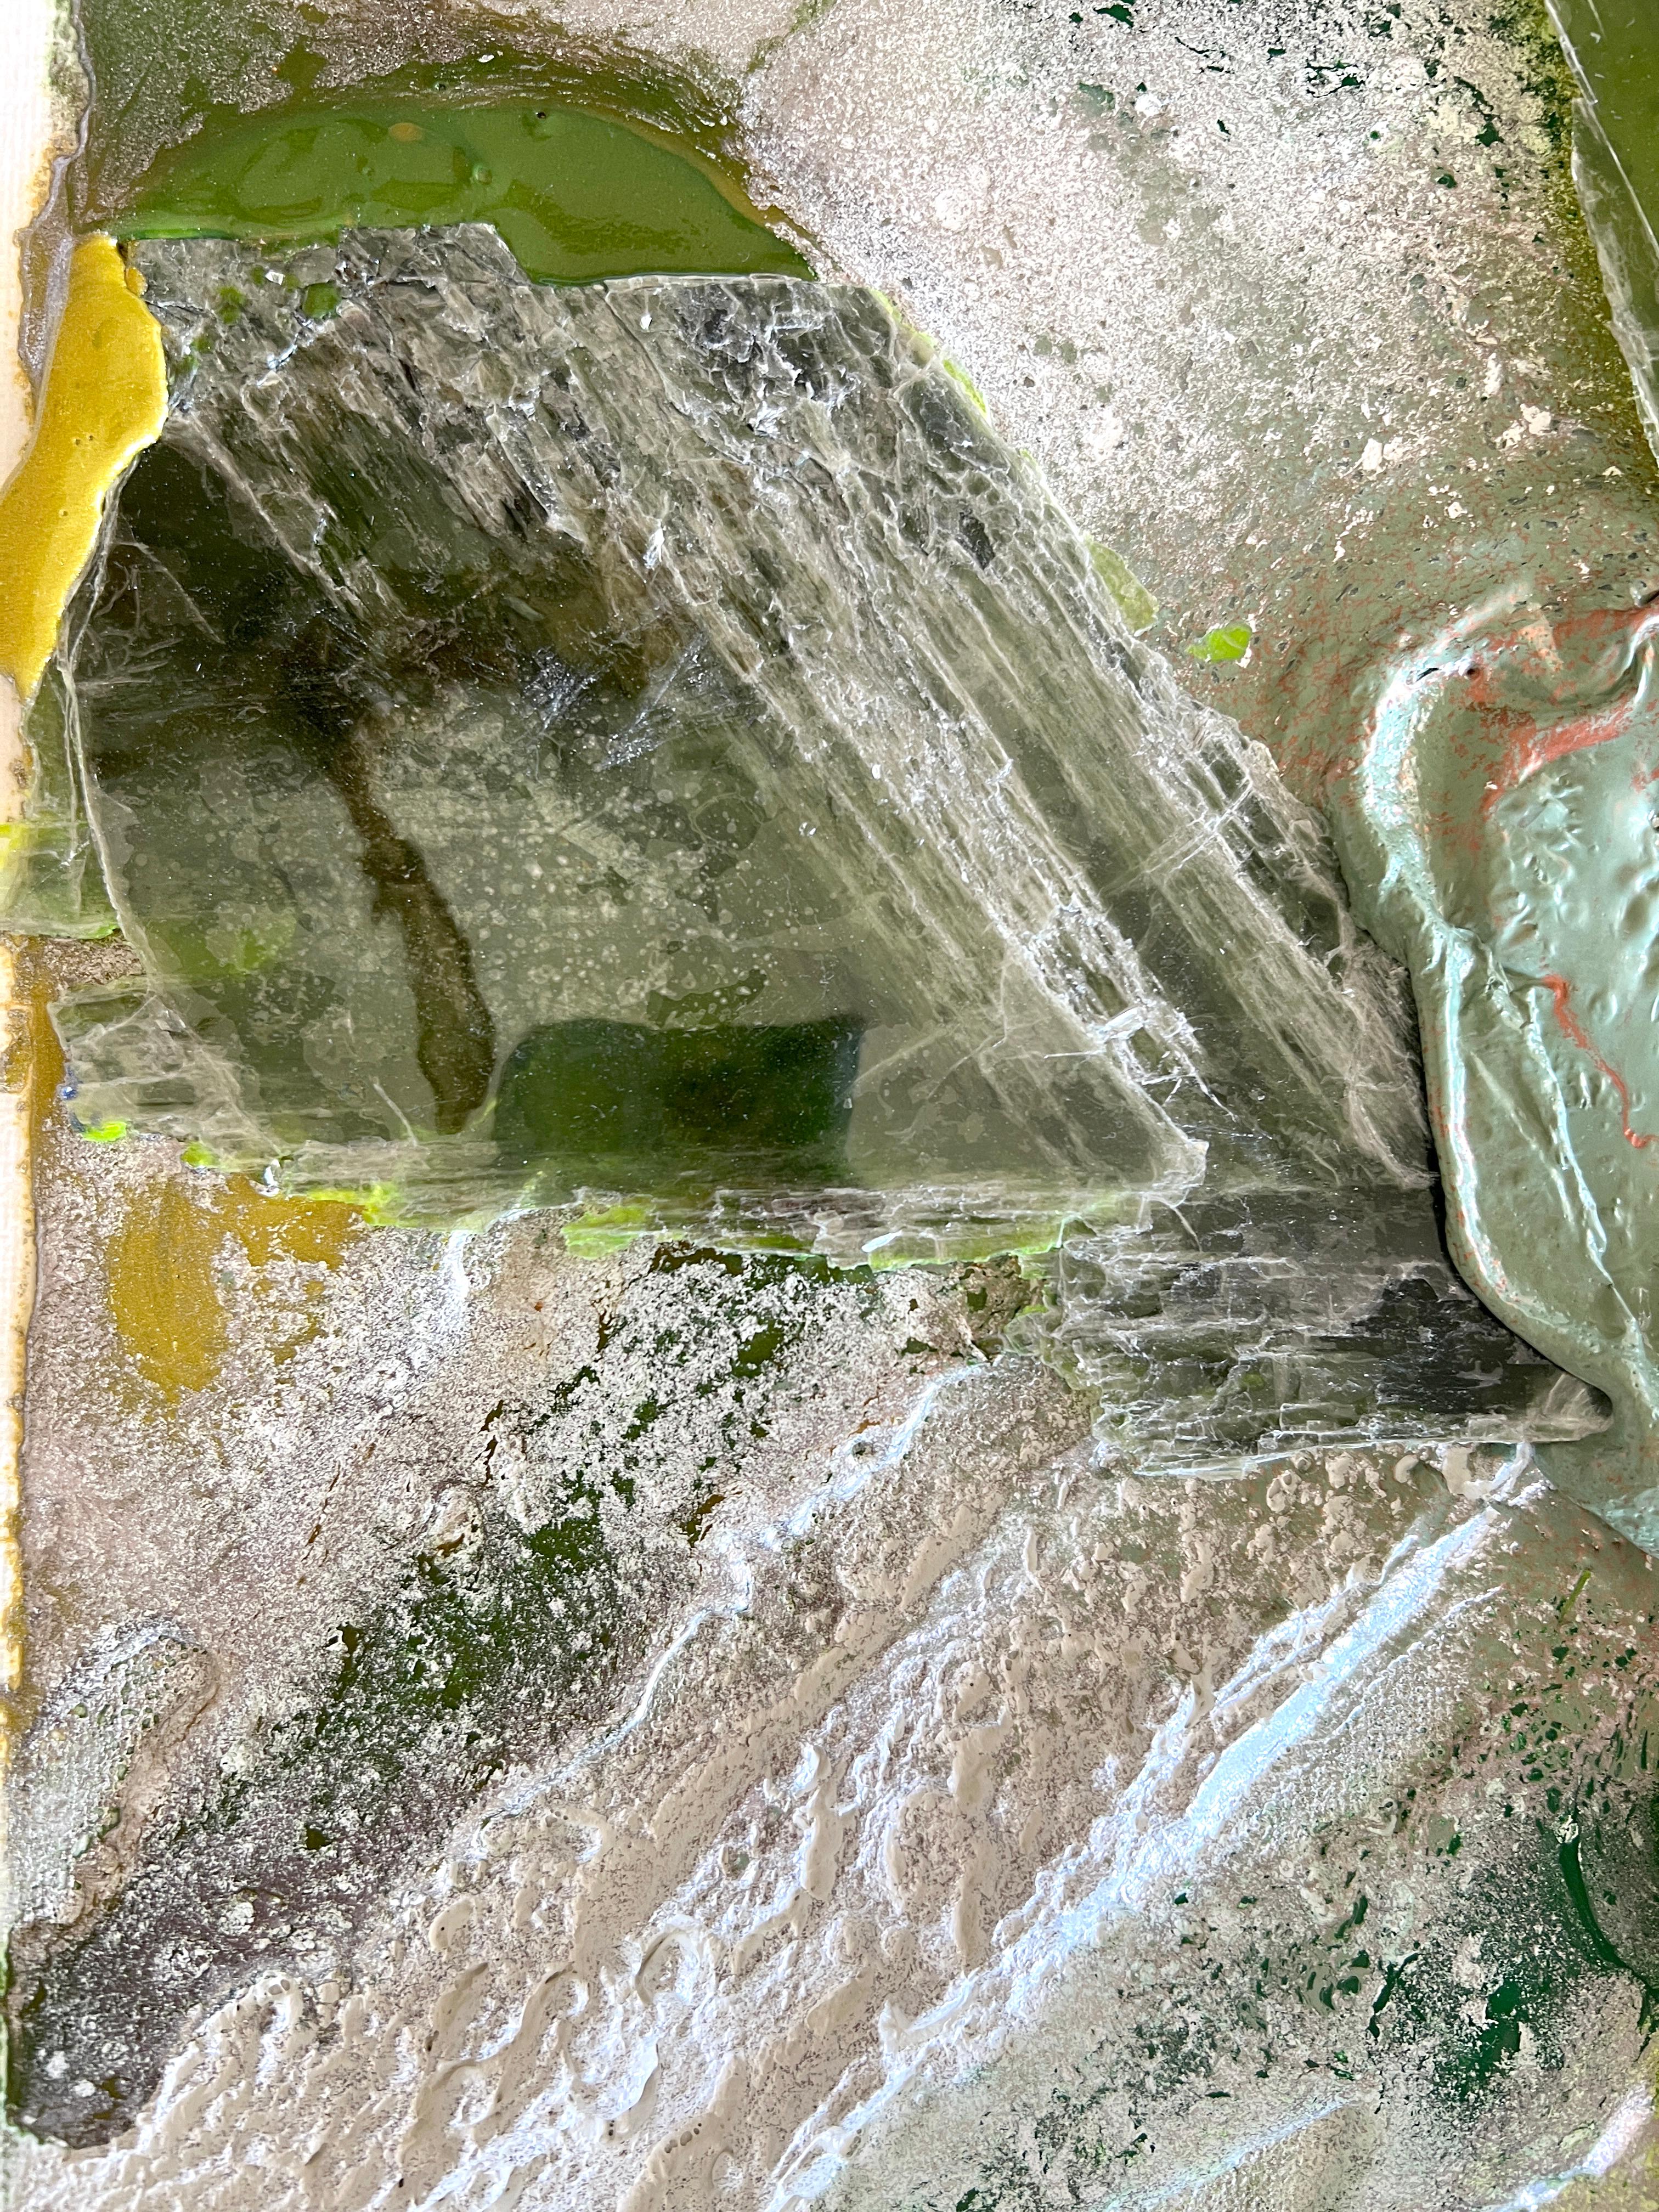 2022, Glimmerplatten und aufgetragene Farbpulverbeschichtung auf Keramikfaserpapier, 17,125 x 17,2 x 0,5 Zoll, montiert in einem schwimmenden Rahmen aus Ahorn.

Der Designer Micah Heimlich verarbeitet seit über einem Jahrzehnt Glimmer in seinen